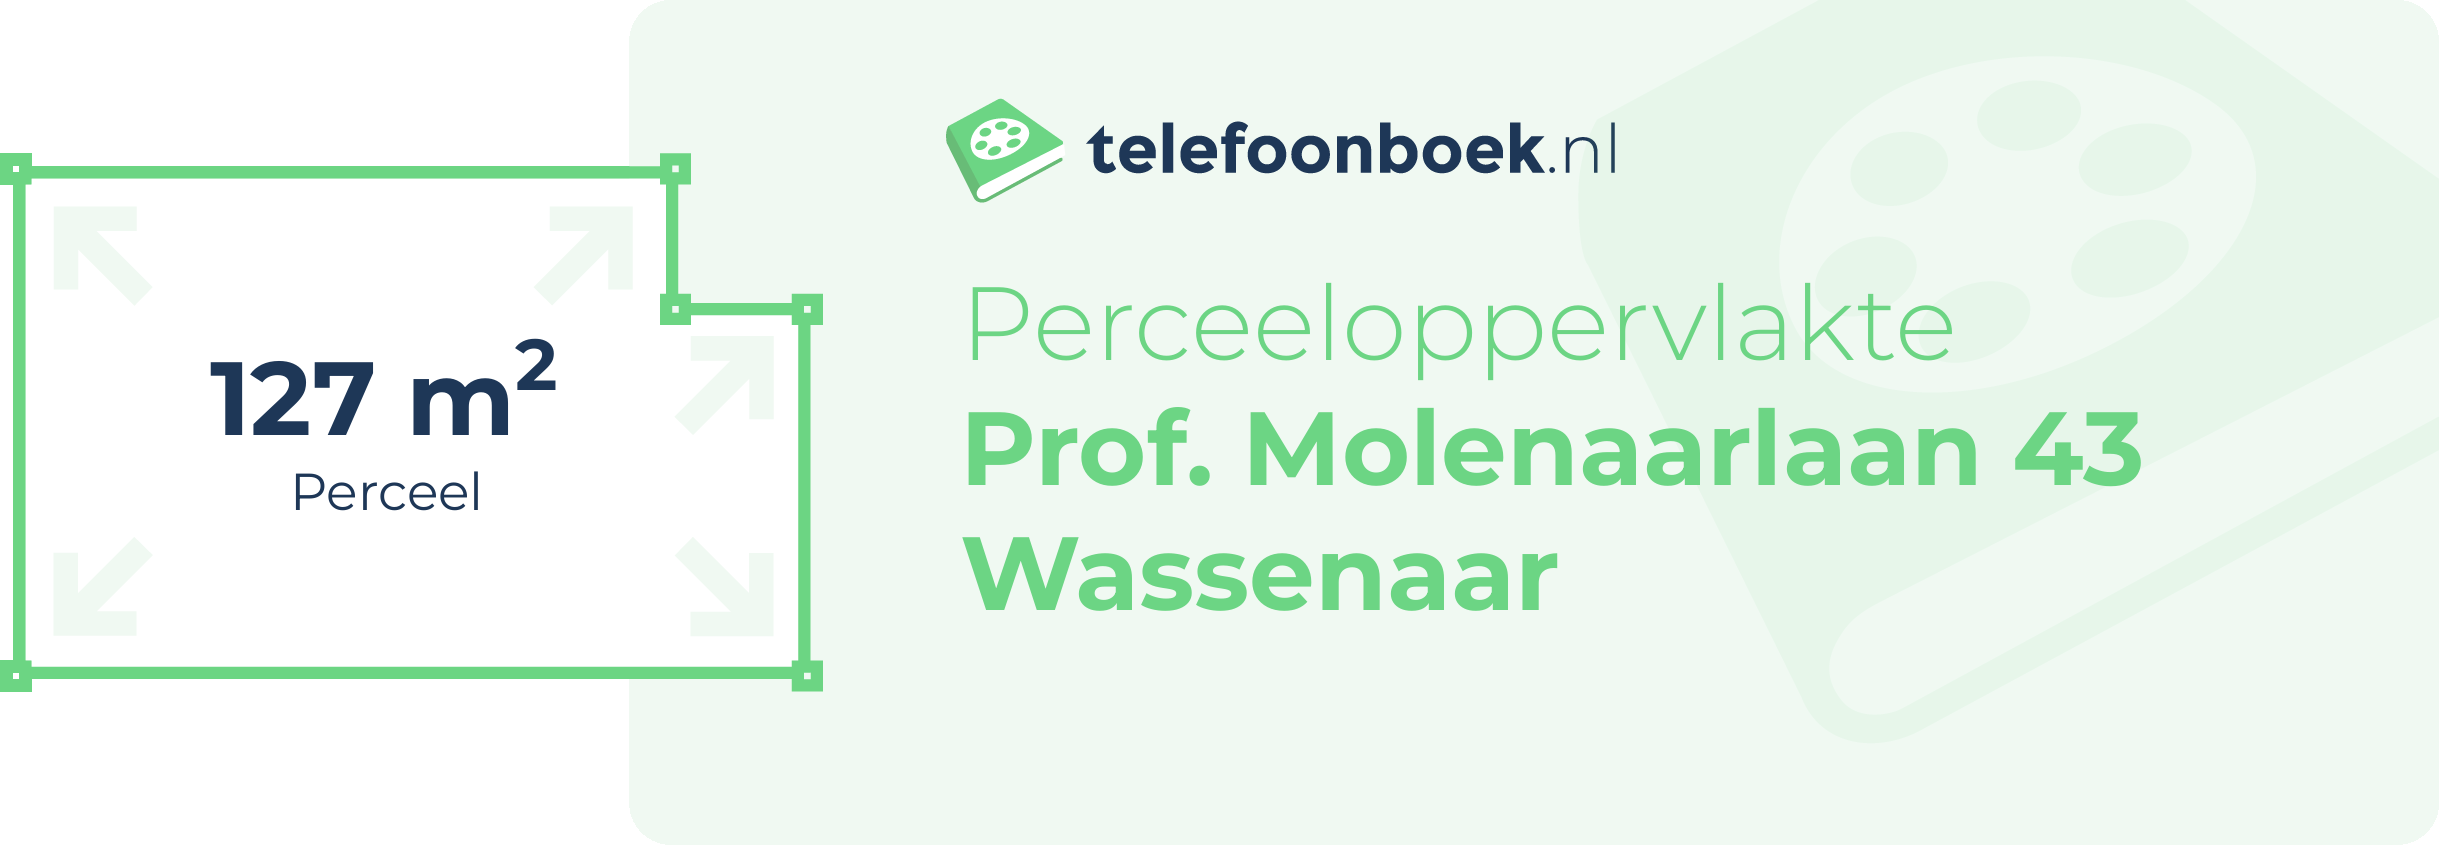 Perceeloppervlakte Prof. Molenaarlaan 43 Wassenaar